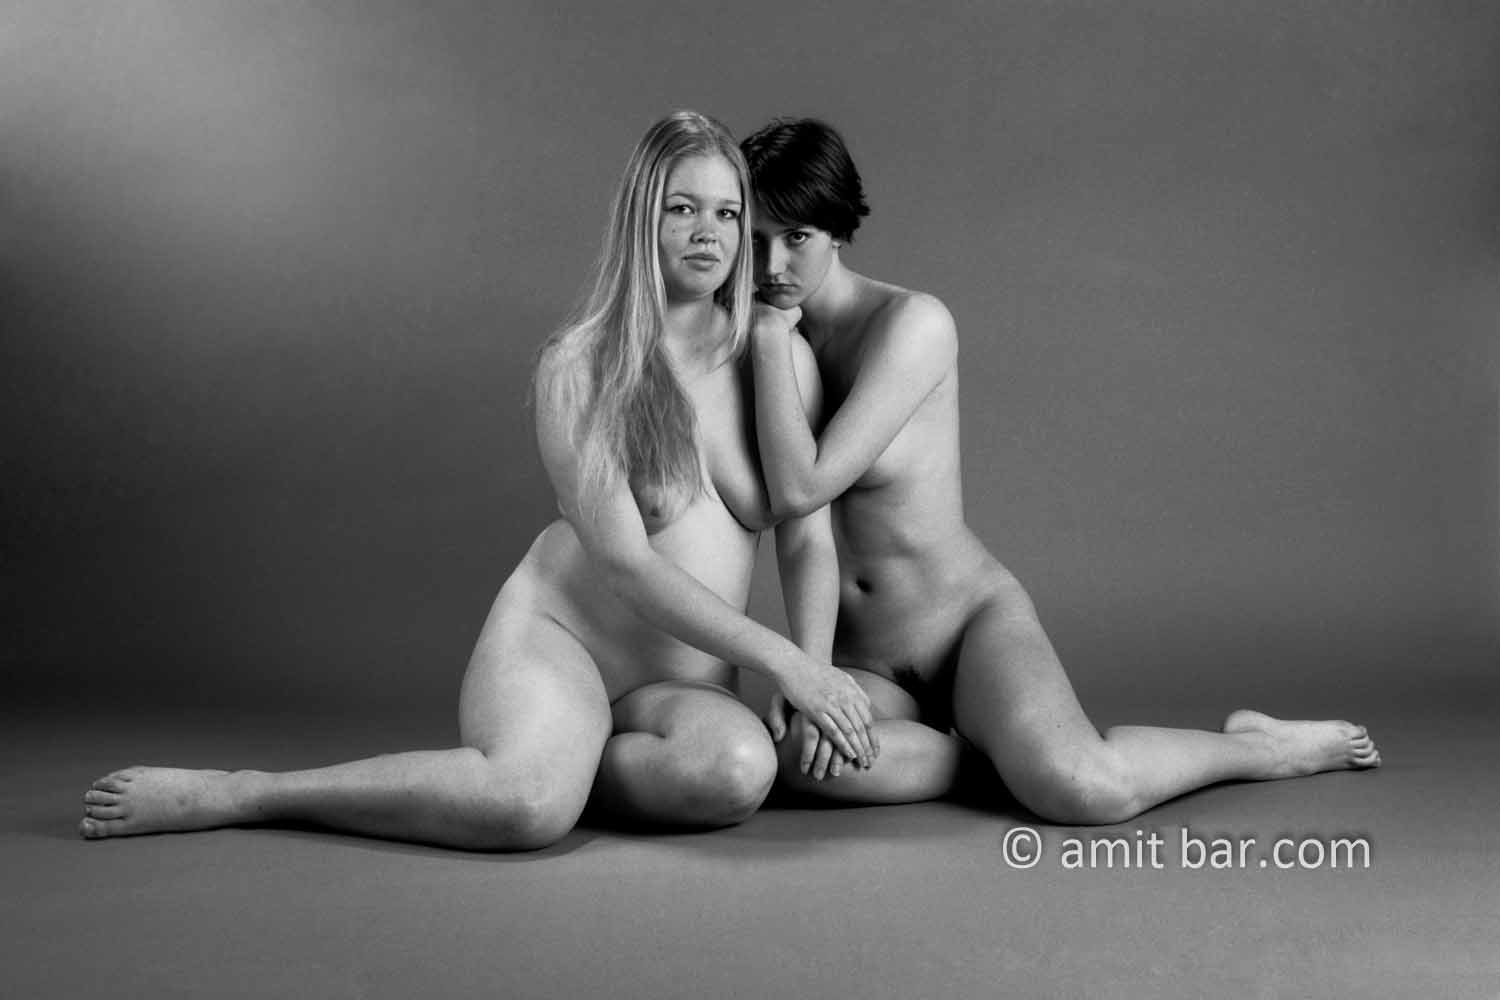 Girlfriends I: Portrait of a nude model in my studio